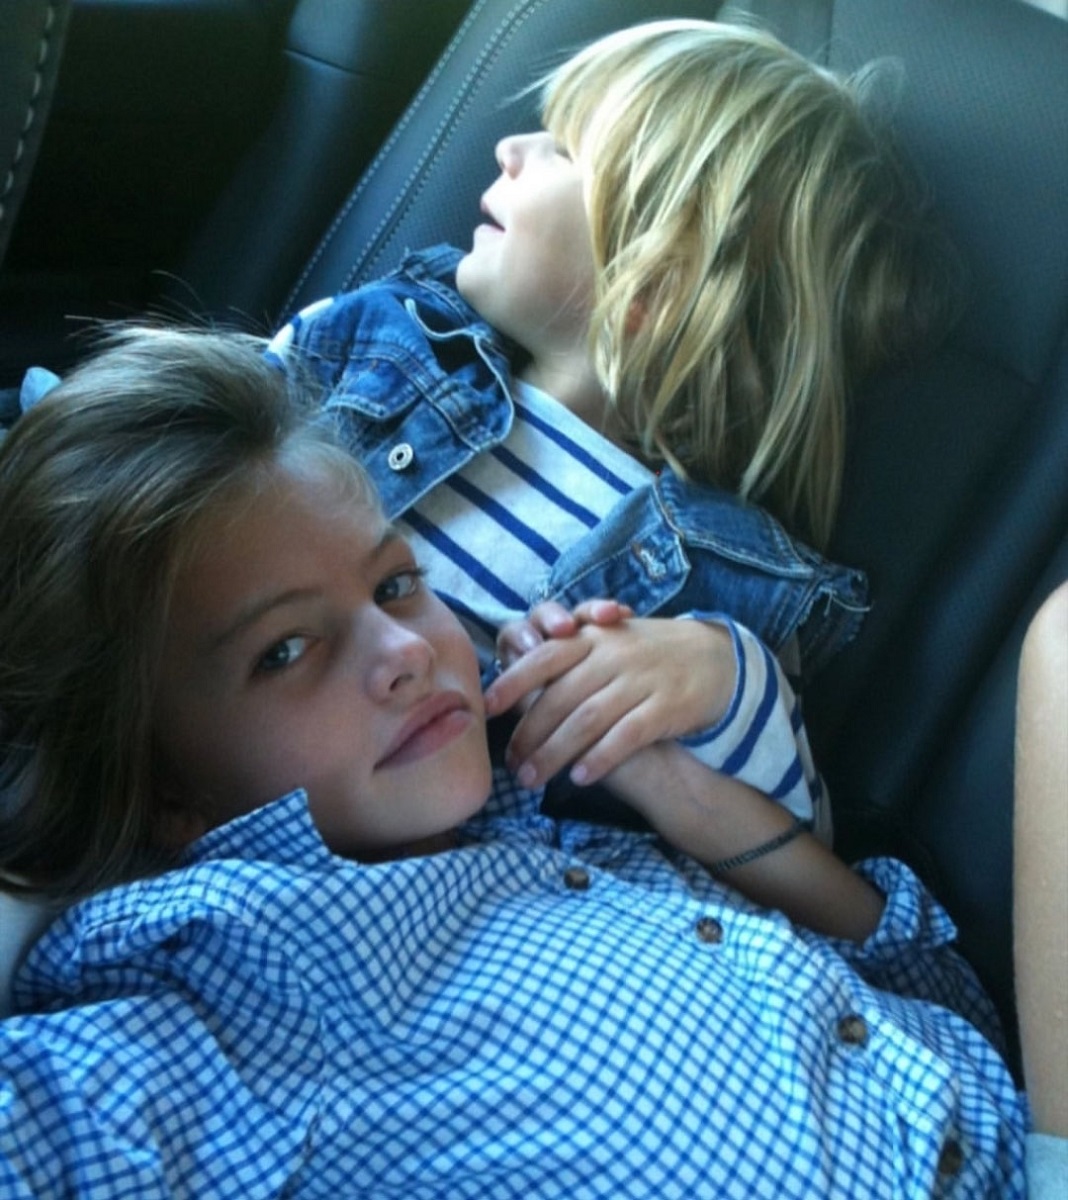 Thylane Blondeau, cea mai frumoasă fetiță din lume, în mașină, alături de alt copil. Amândoi îmbrăcați în albastru și se țin de mână